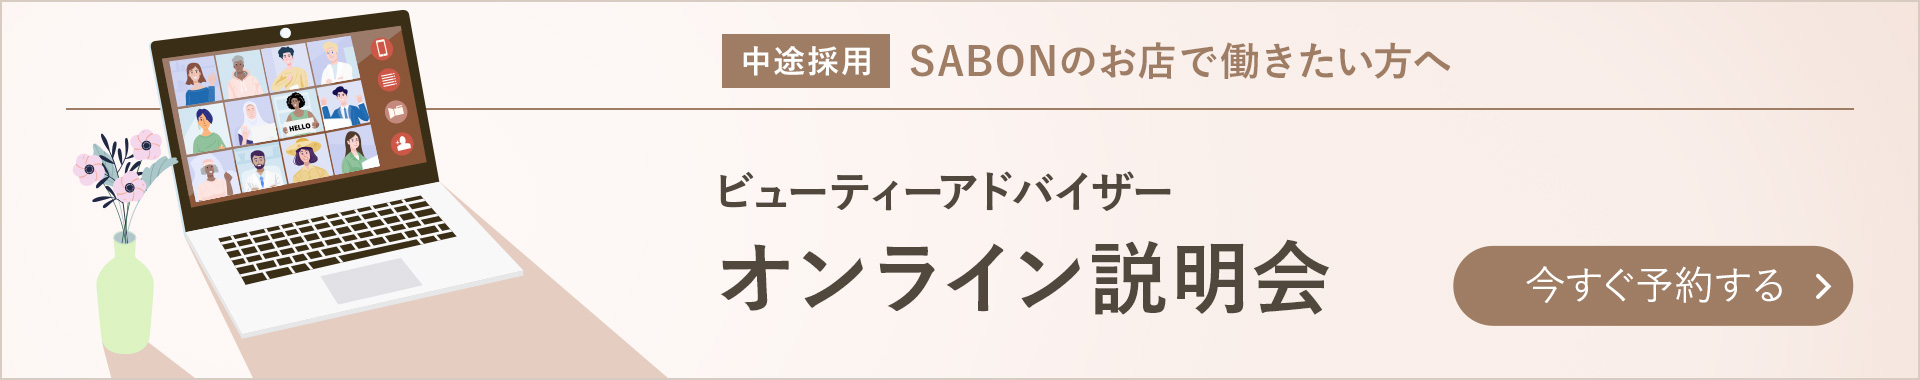 中途採用 SABONのお店で働きたい方へ ビューティーアドバイザーオンライン説明会 今すぐ予約する